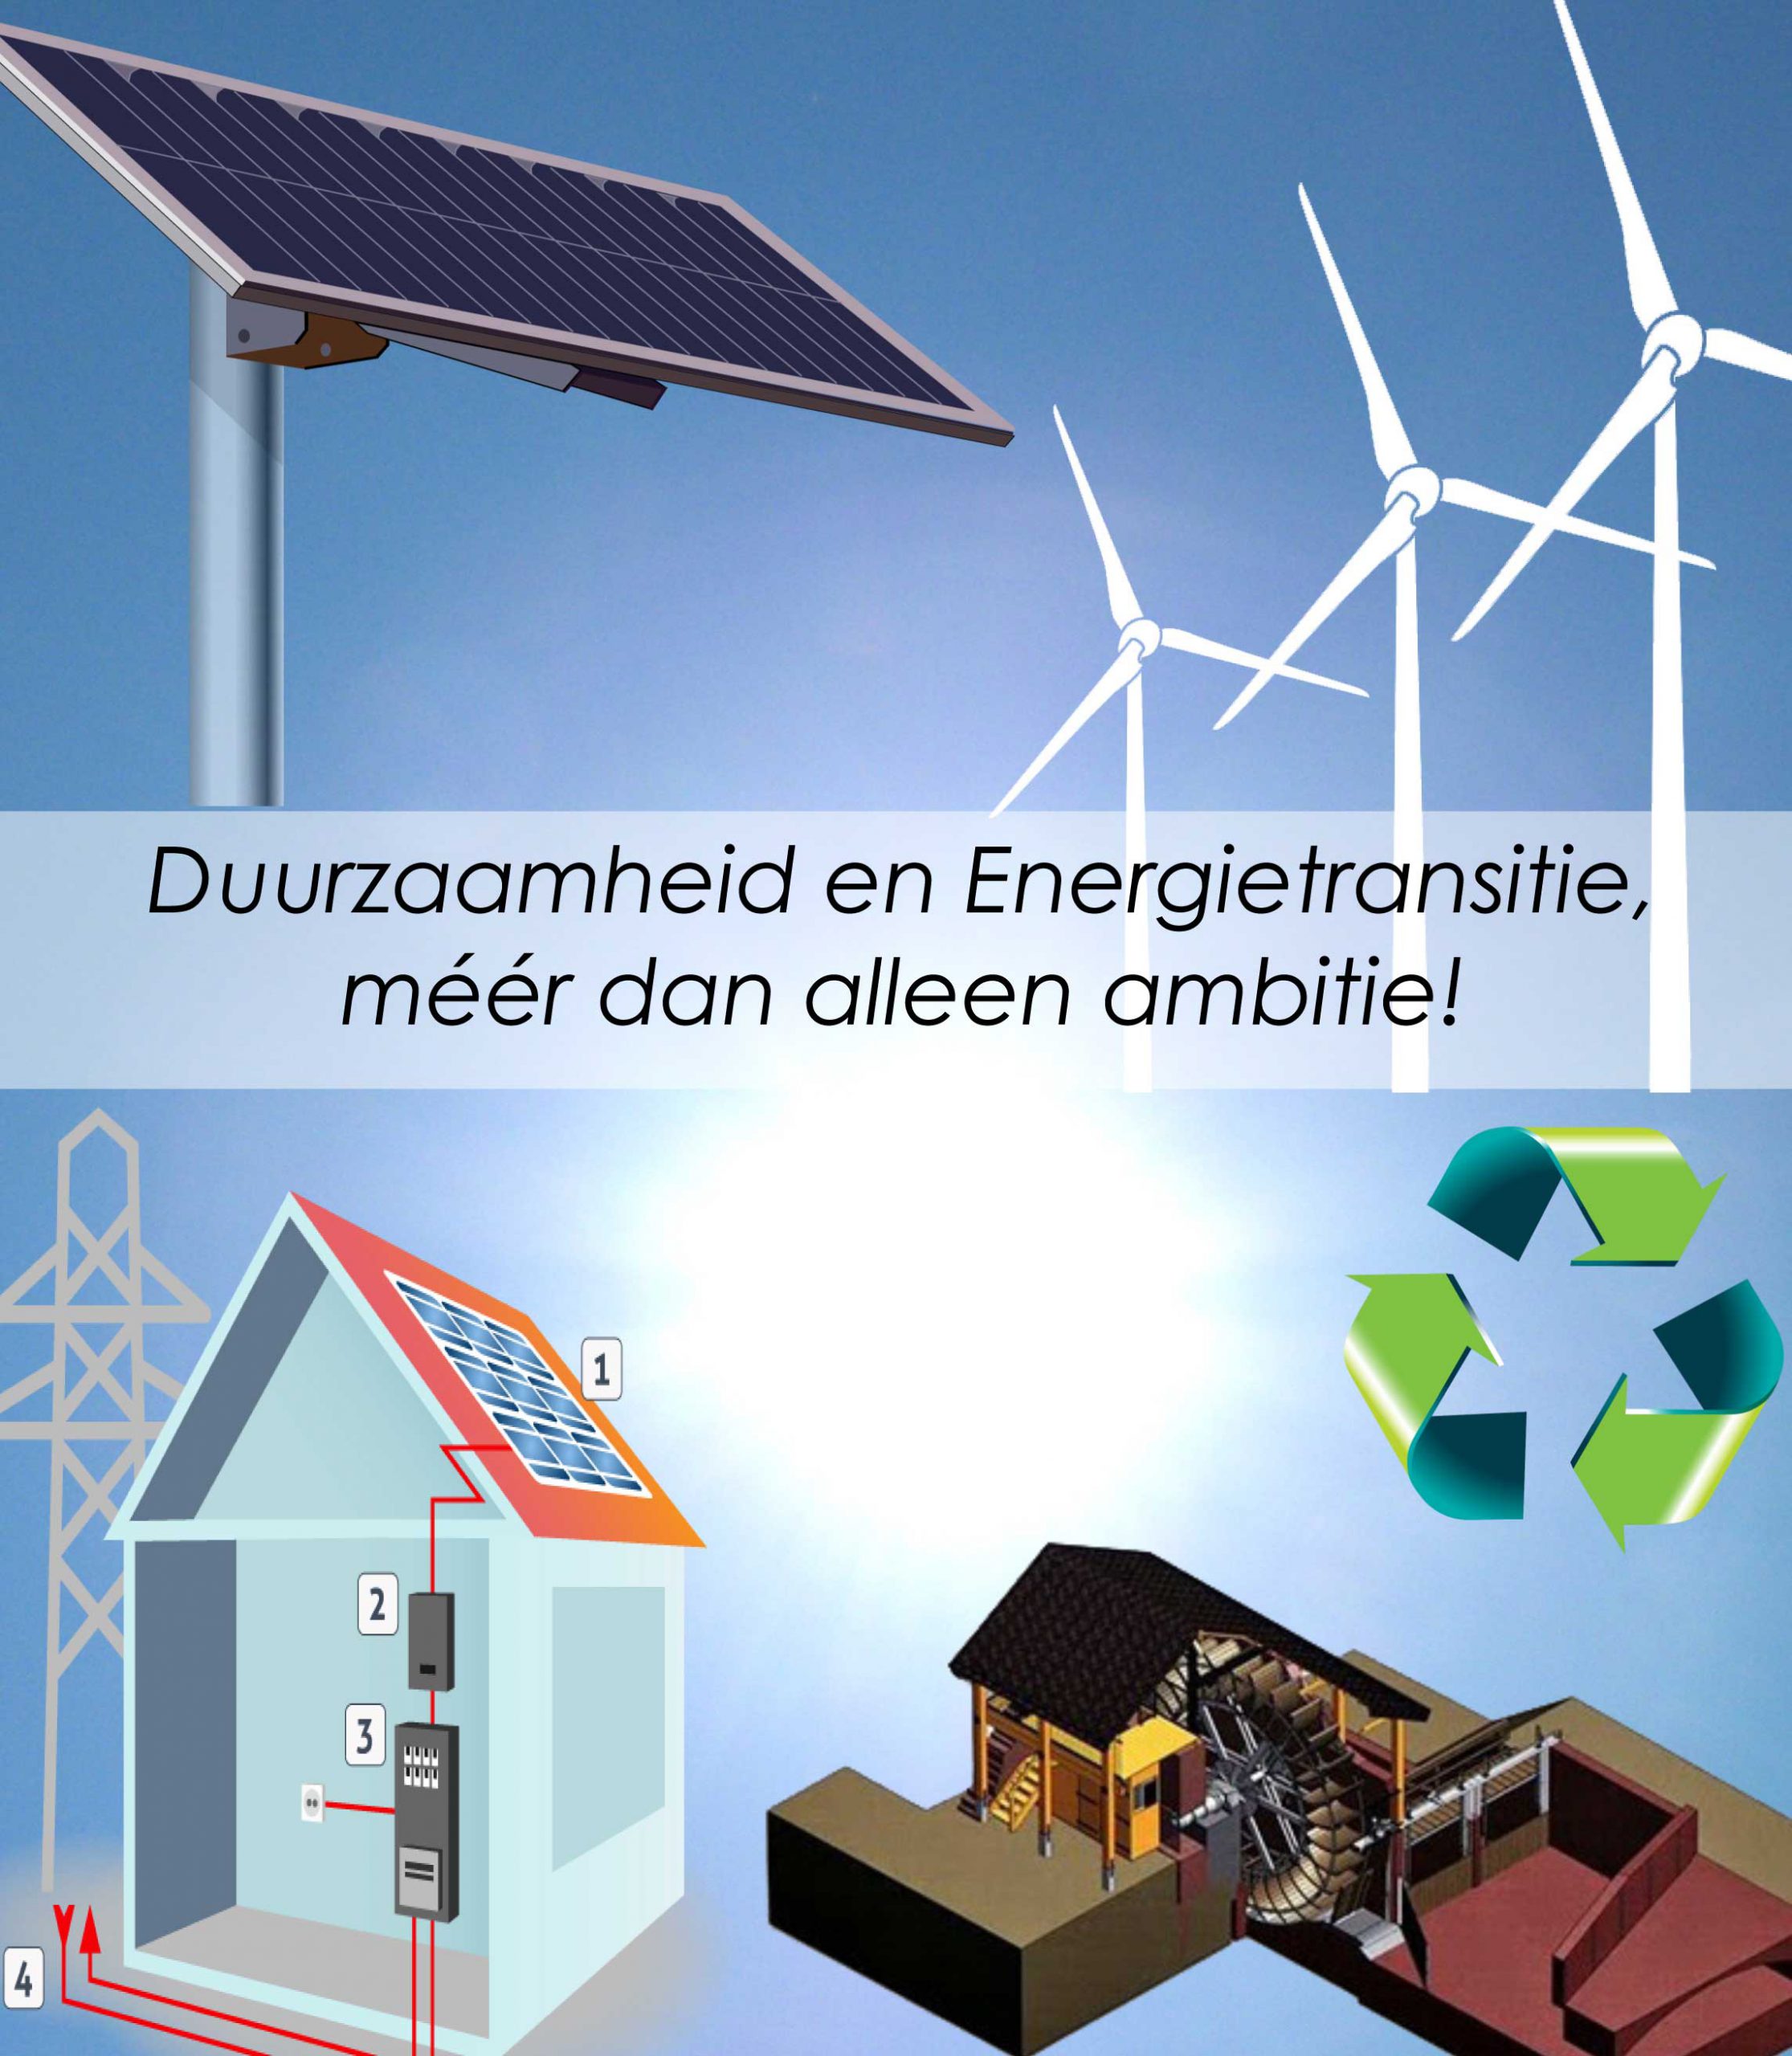 2017-09-duurzaamheid-en-energietransitie-scaled